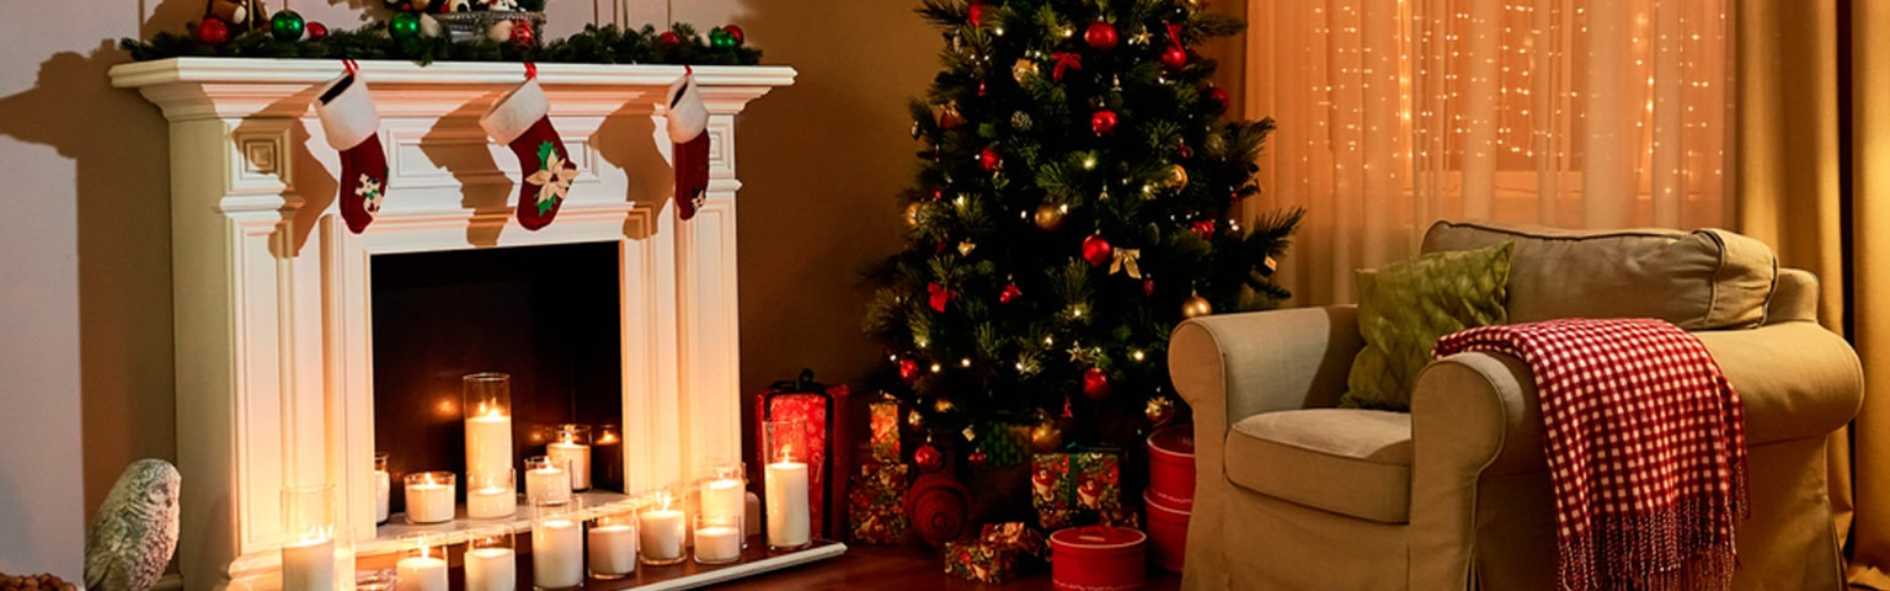 La decoración navideña y su significado en esta época del año